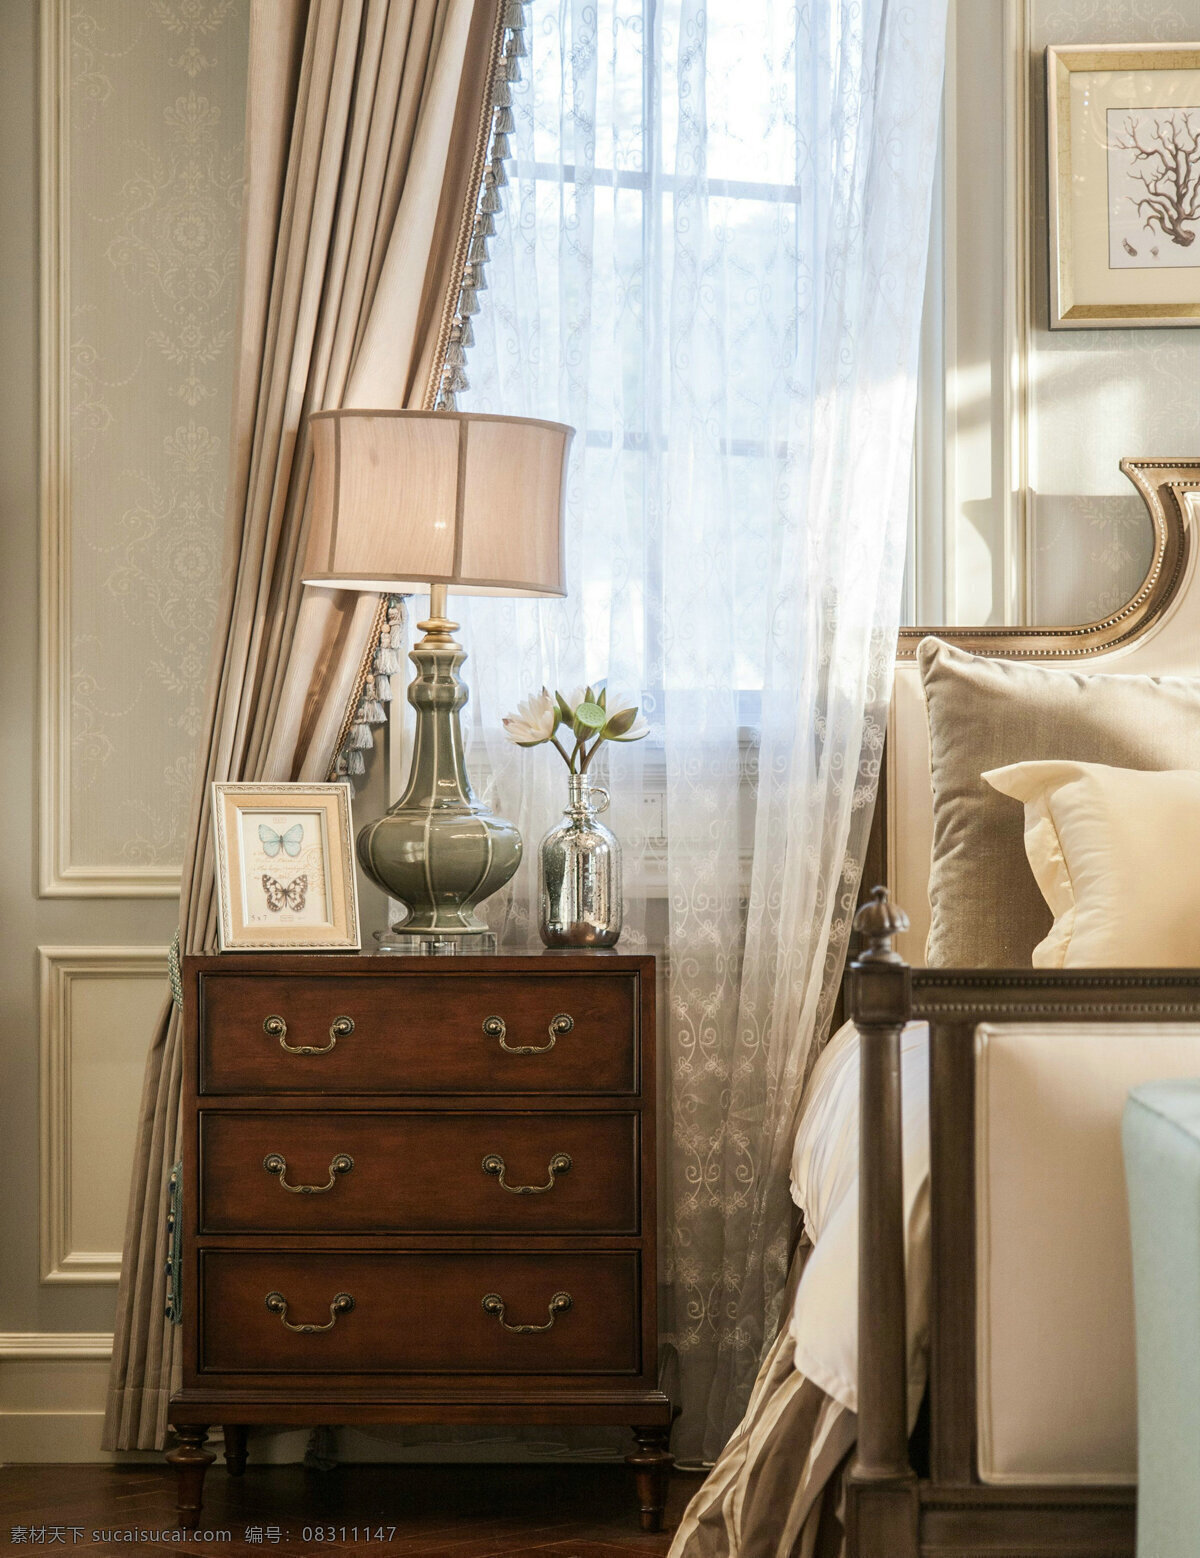 美式 经典 时尚 床头 红木 柜子 装修 效果图 卧室装饰 高清大图 室内设计 装饰设计